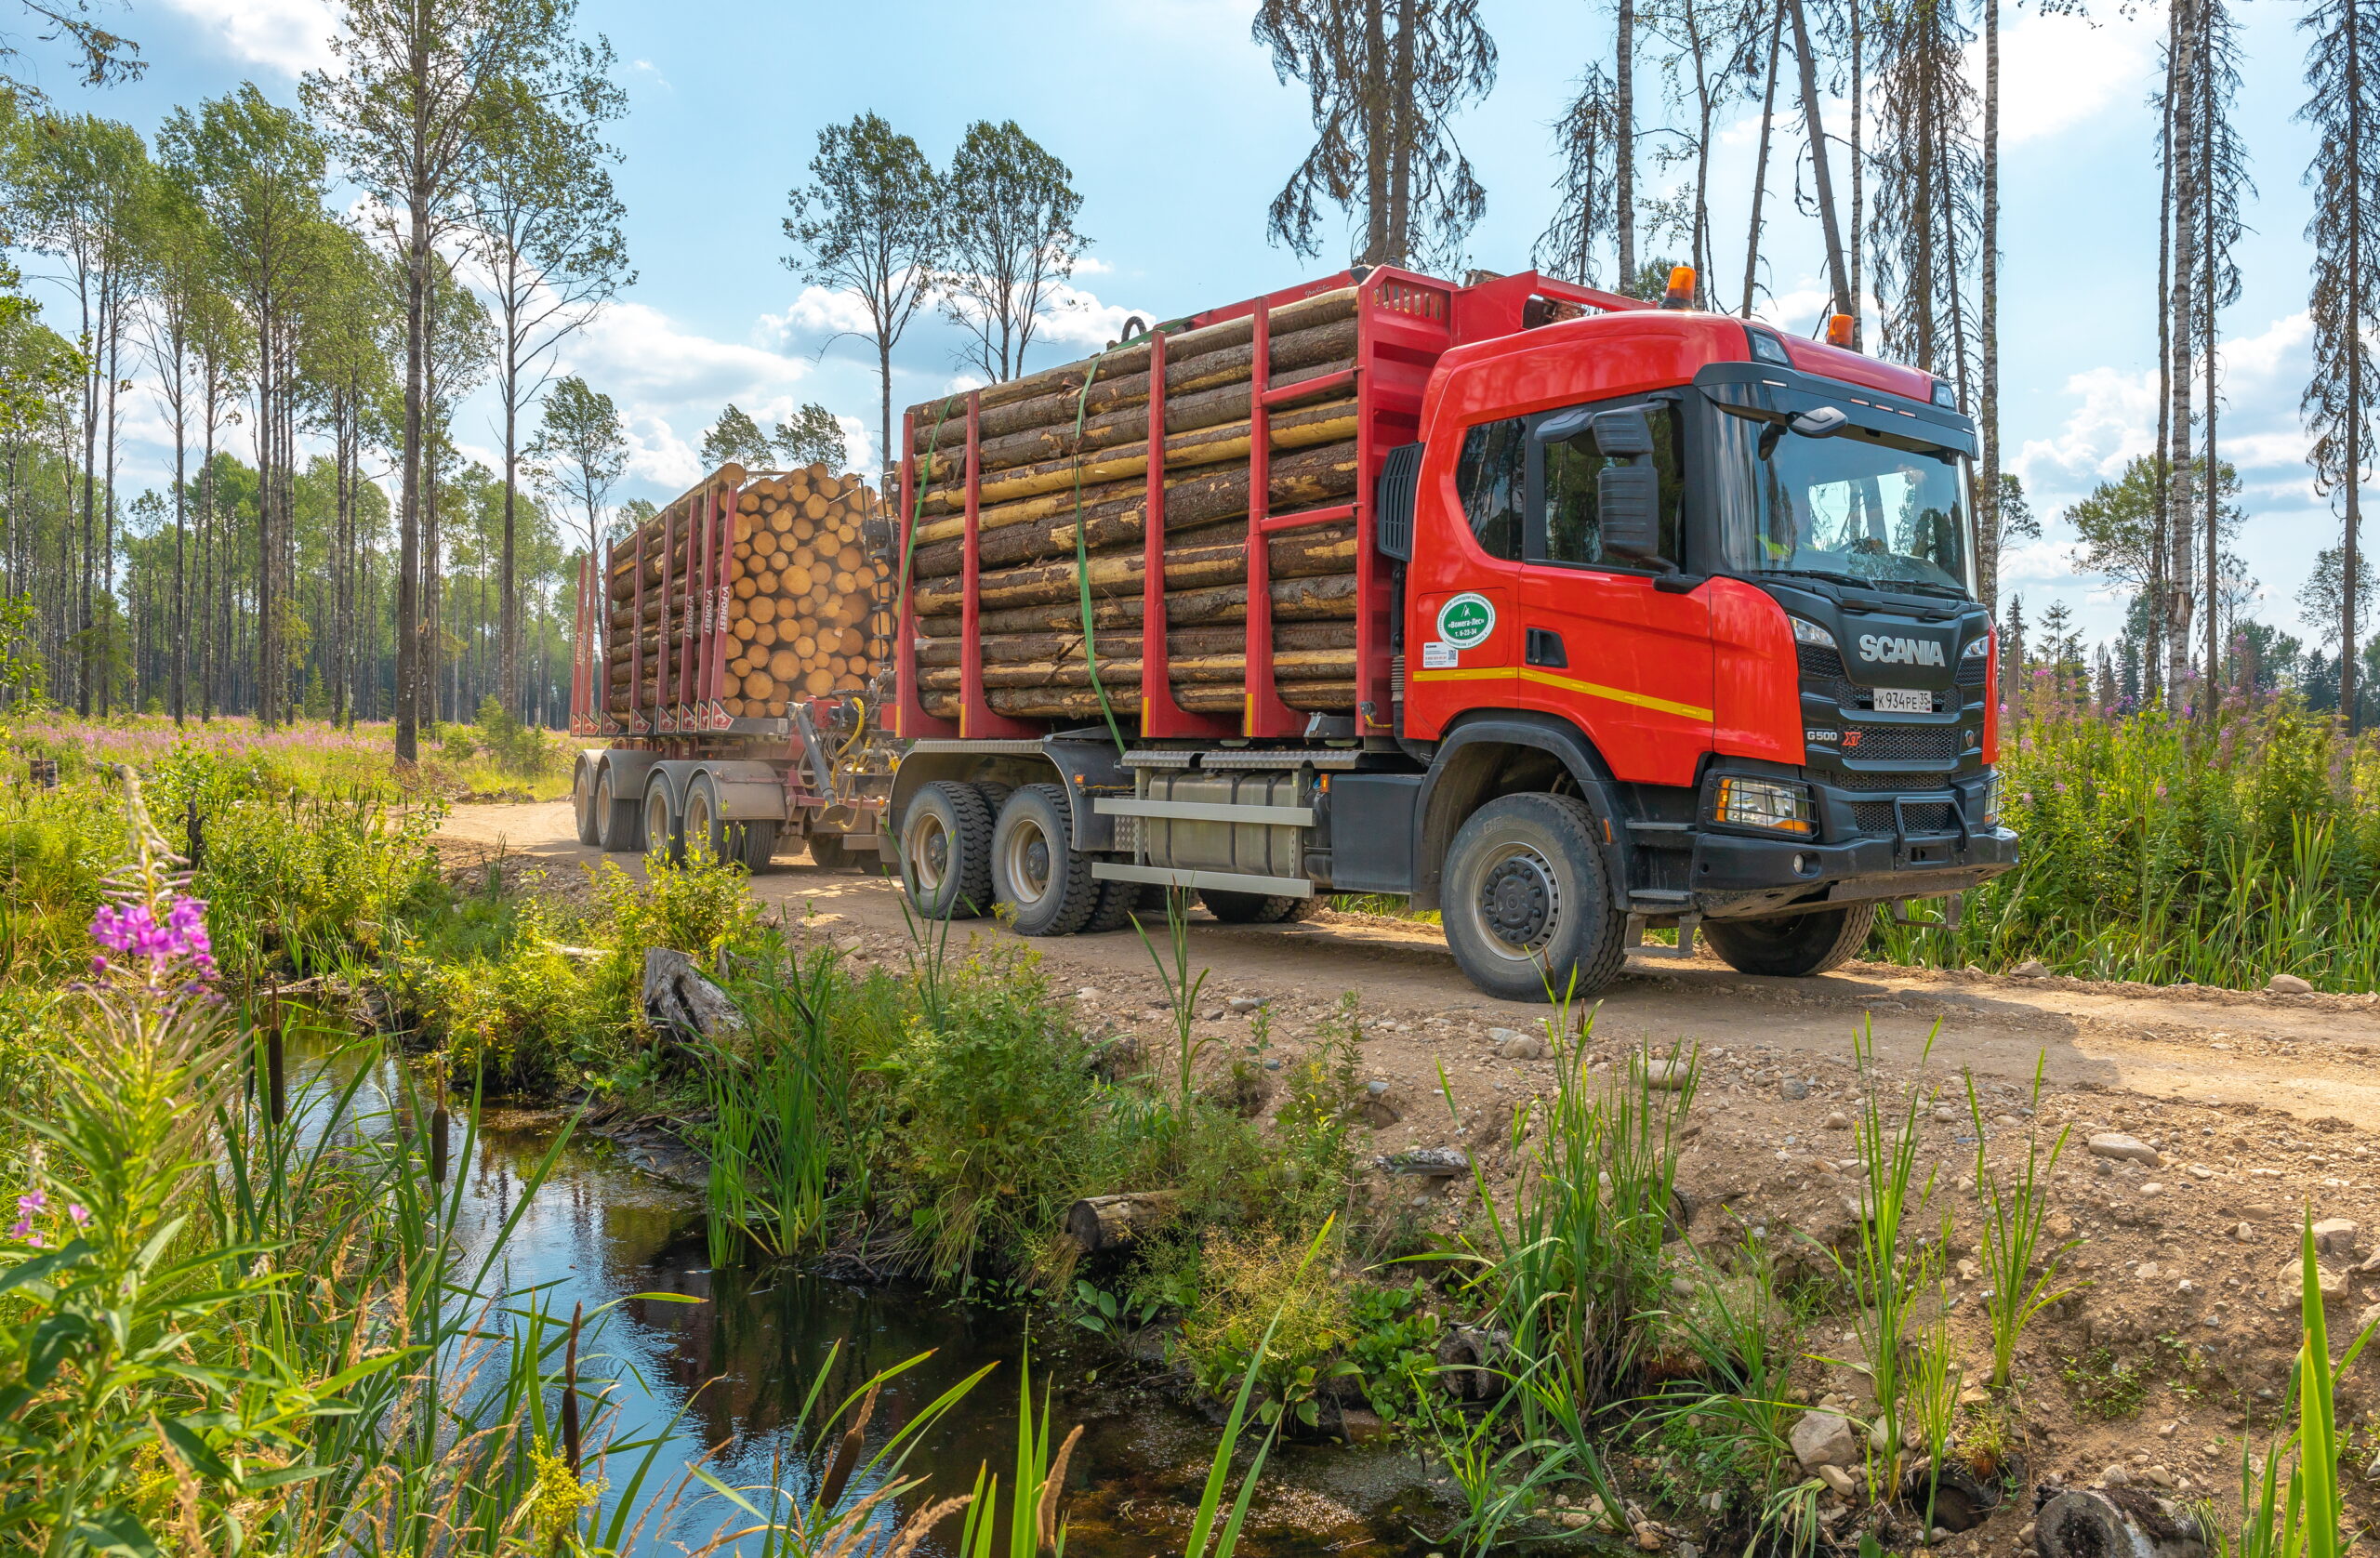 «Вологодские лесопромышленники» вошли в ТОП-10 крупнейших лесопромышленных компаний России по версии журнала «Лесная индустрия»